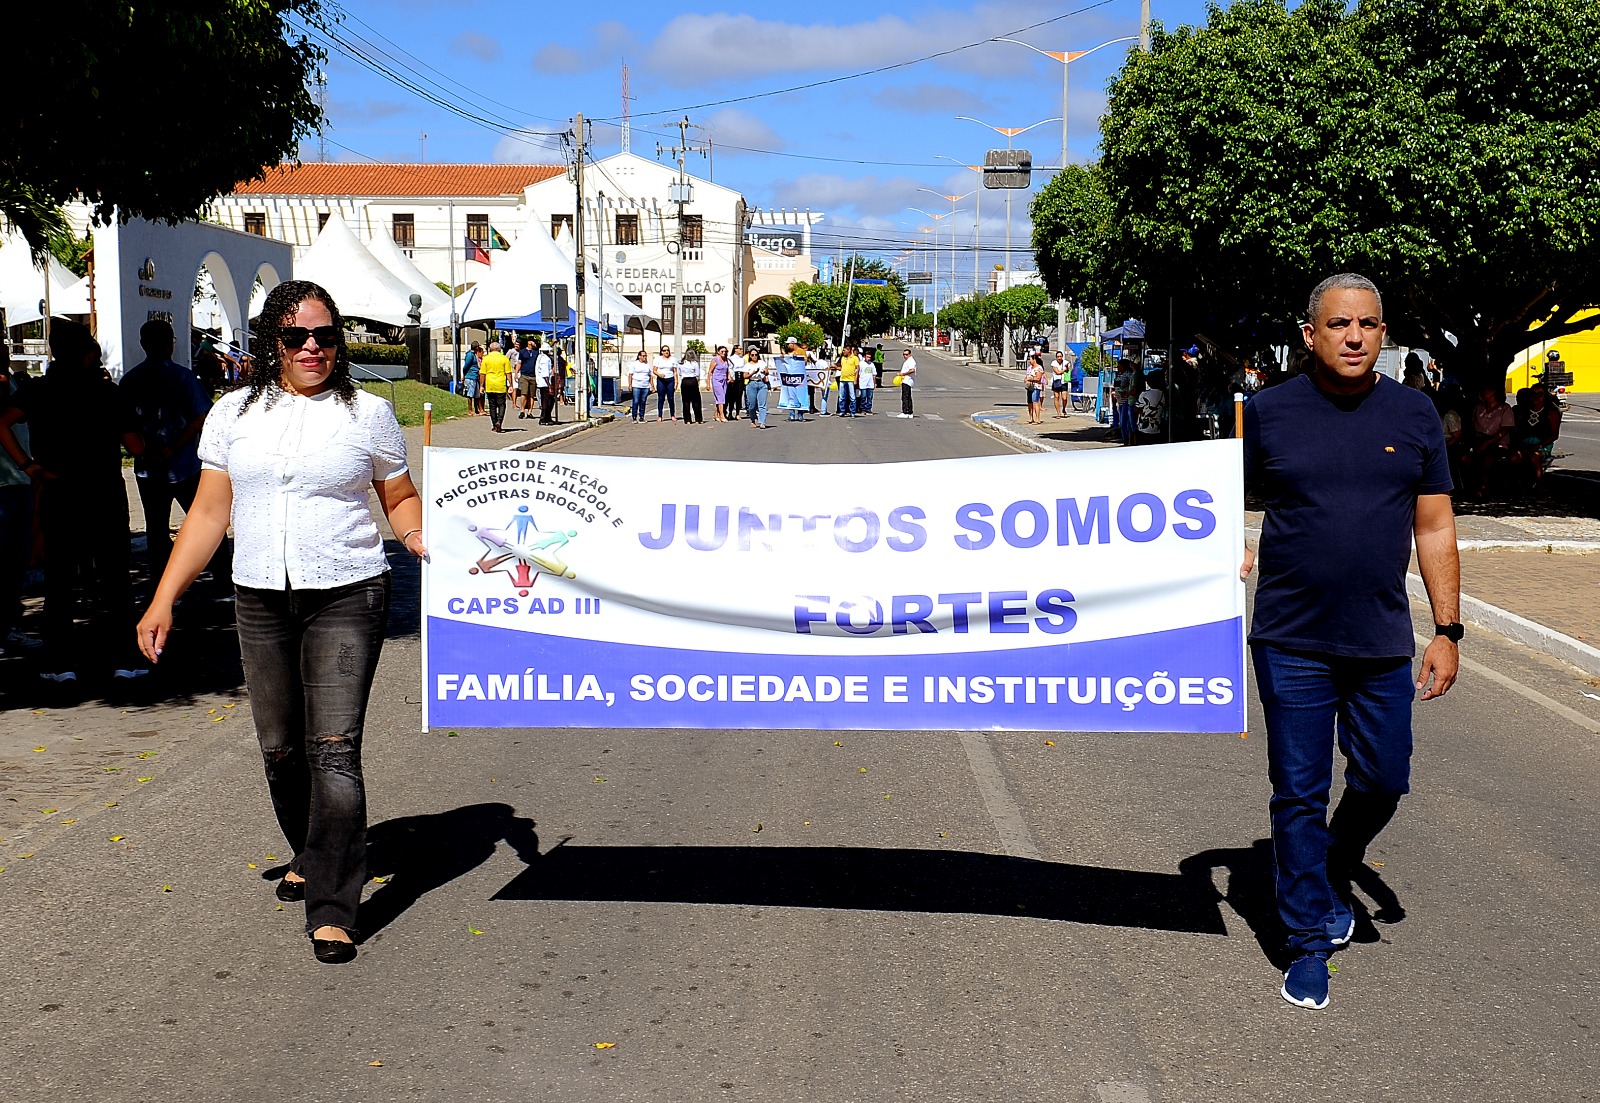 Desfiles-Civicos-em-Monteiro-acontecem-com-grande-presenca-de-publico-e-autoridades-27 Desfiles Cívicos em Monteiro acontecem com grande presença de público e autoridades